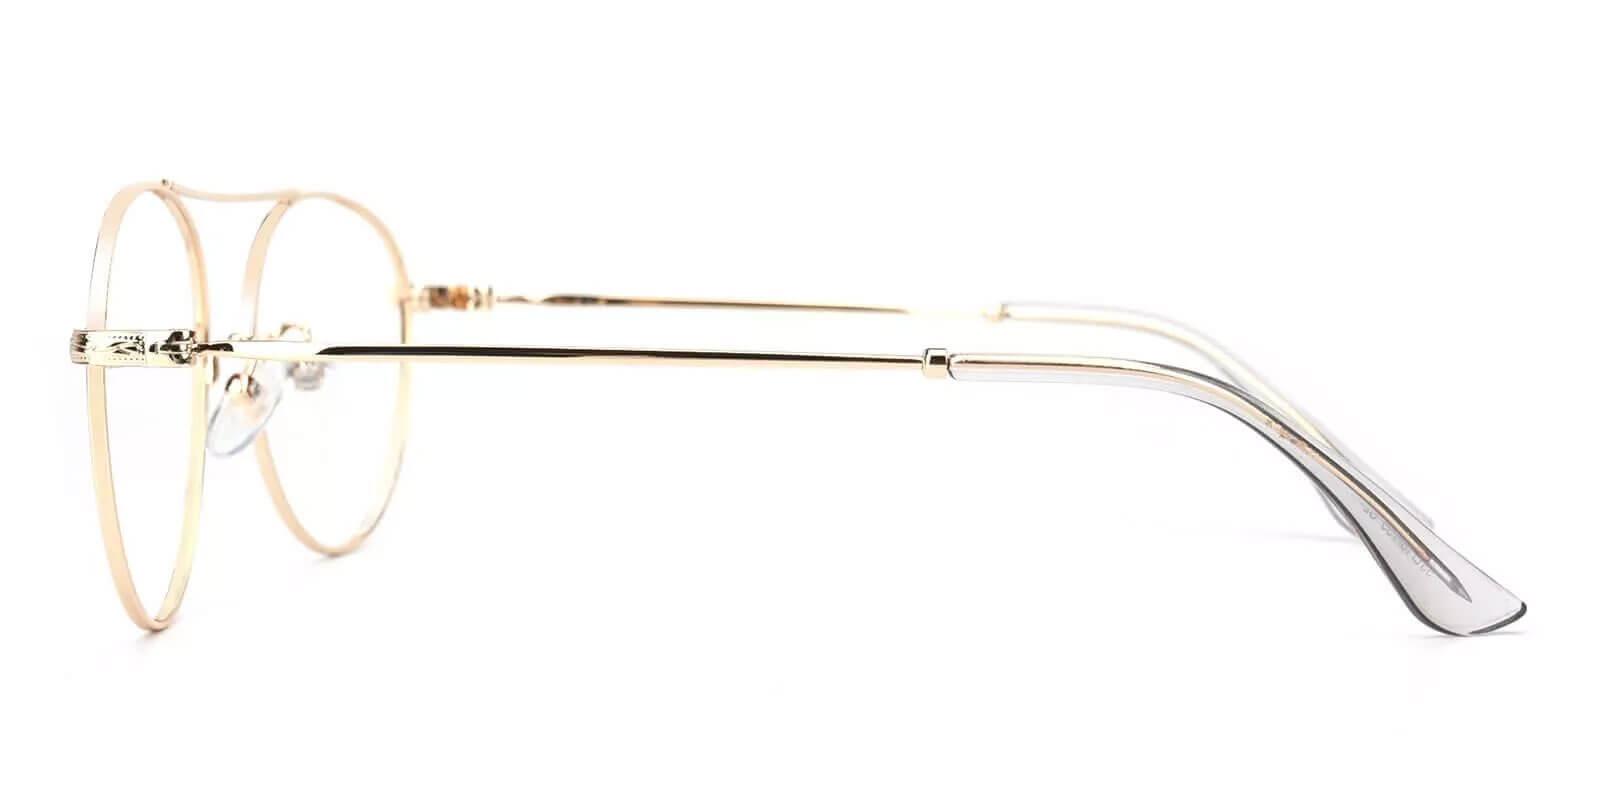 Chloe Gold Metal Eyeglasses , NosePads Frames from ABBE Glasses